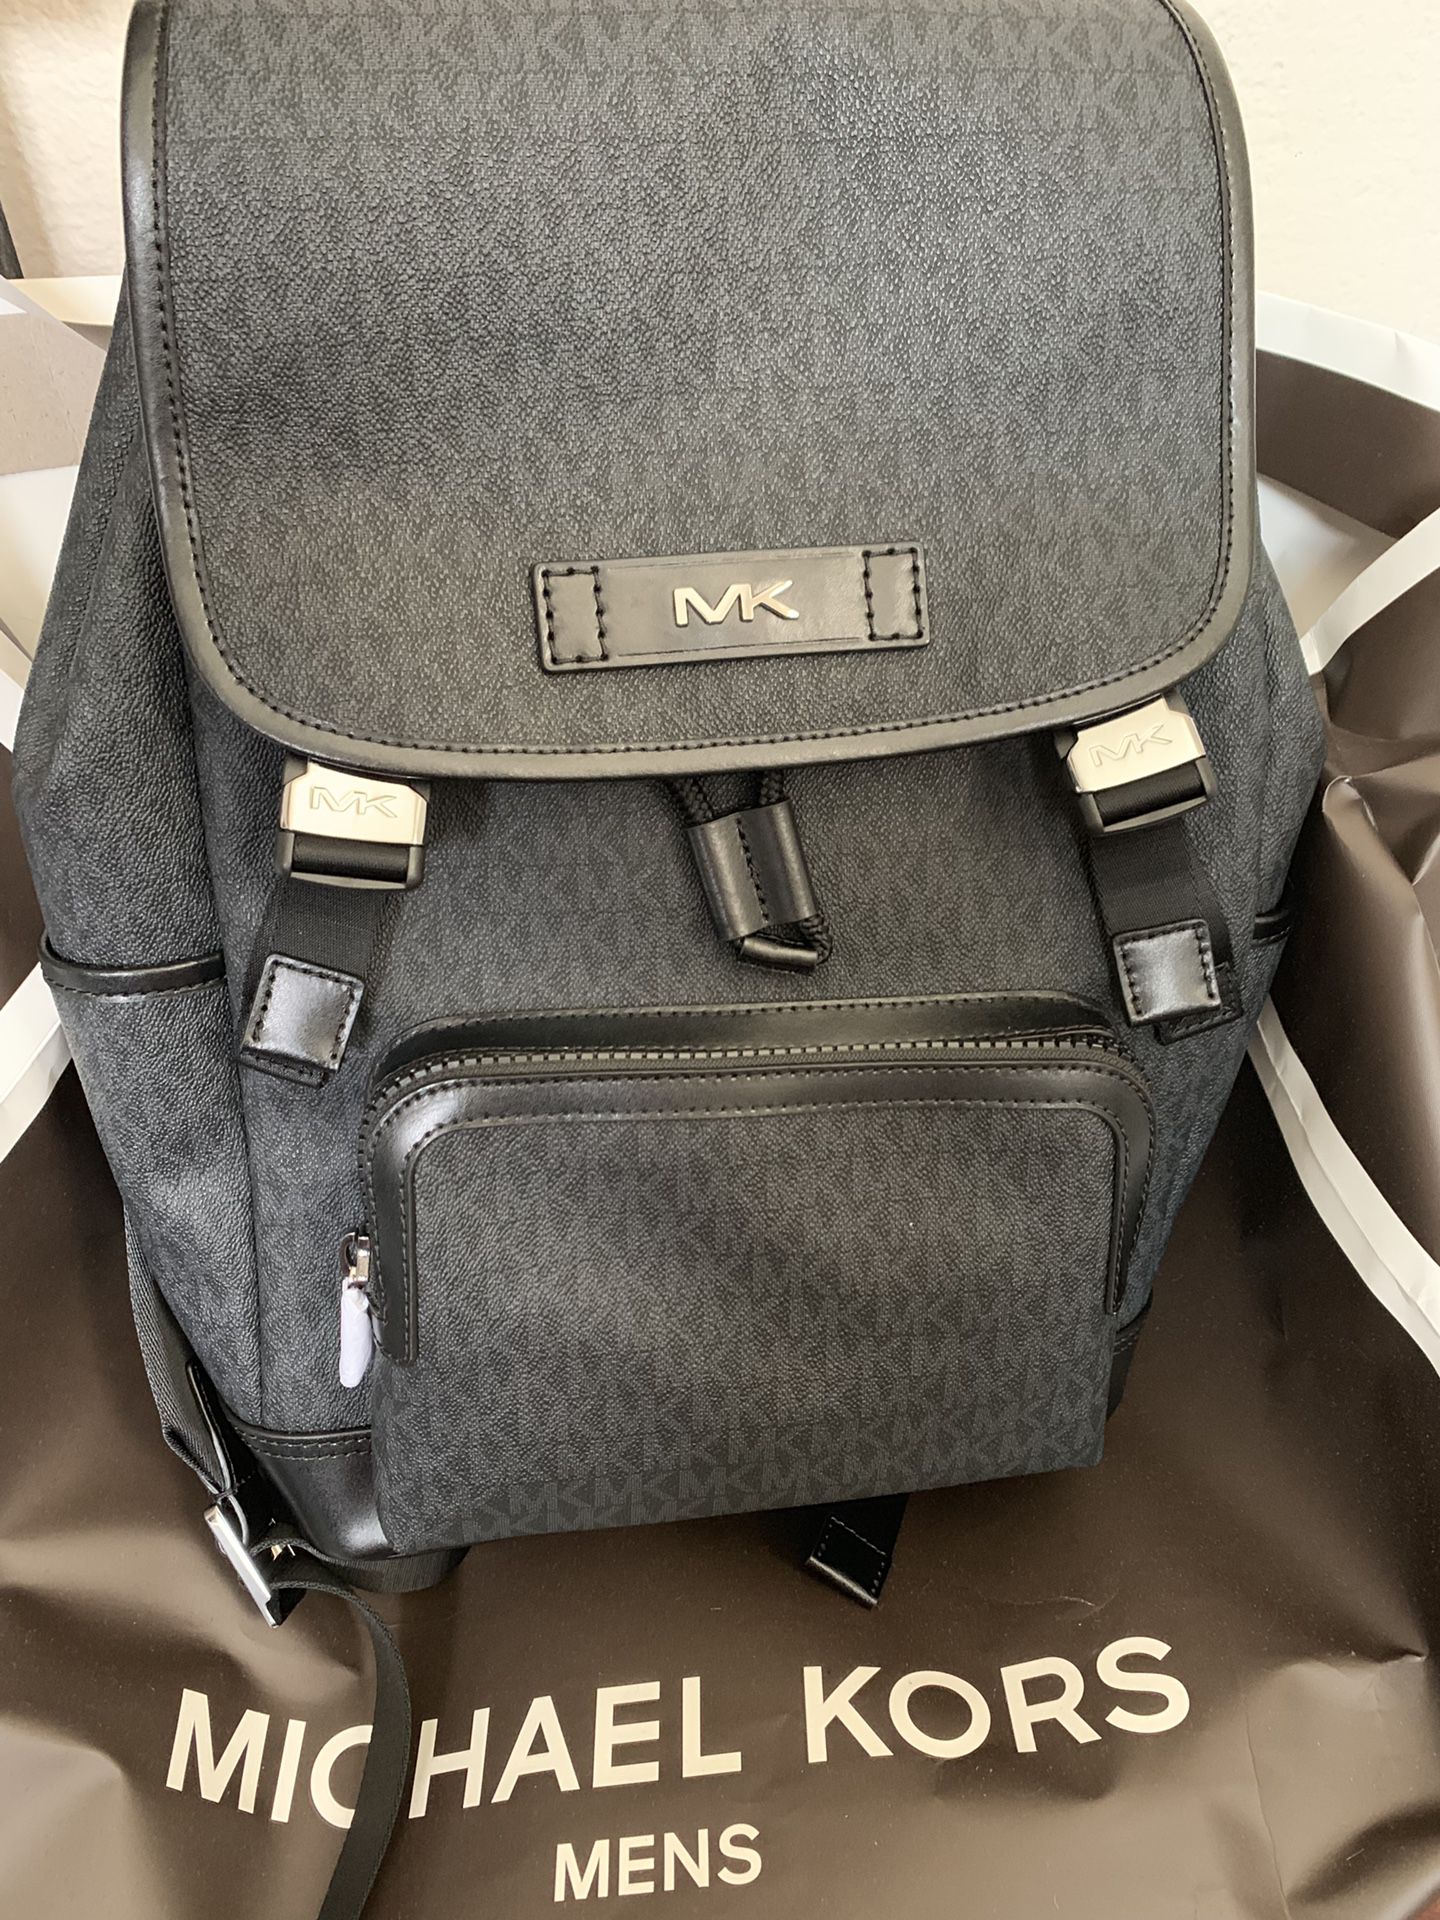 Michael Kors Men’s Backpack